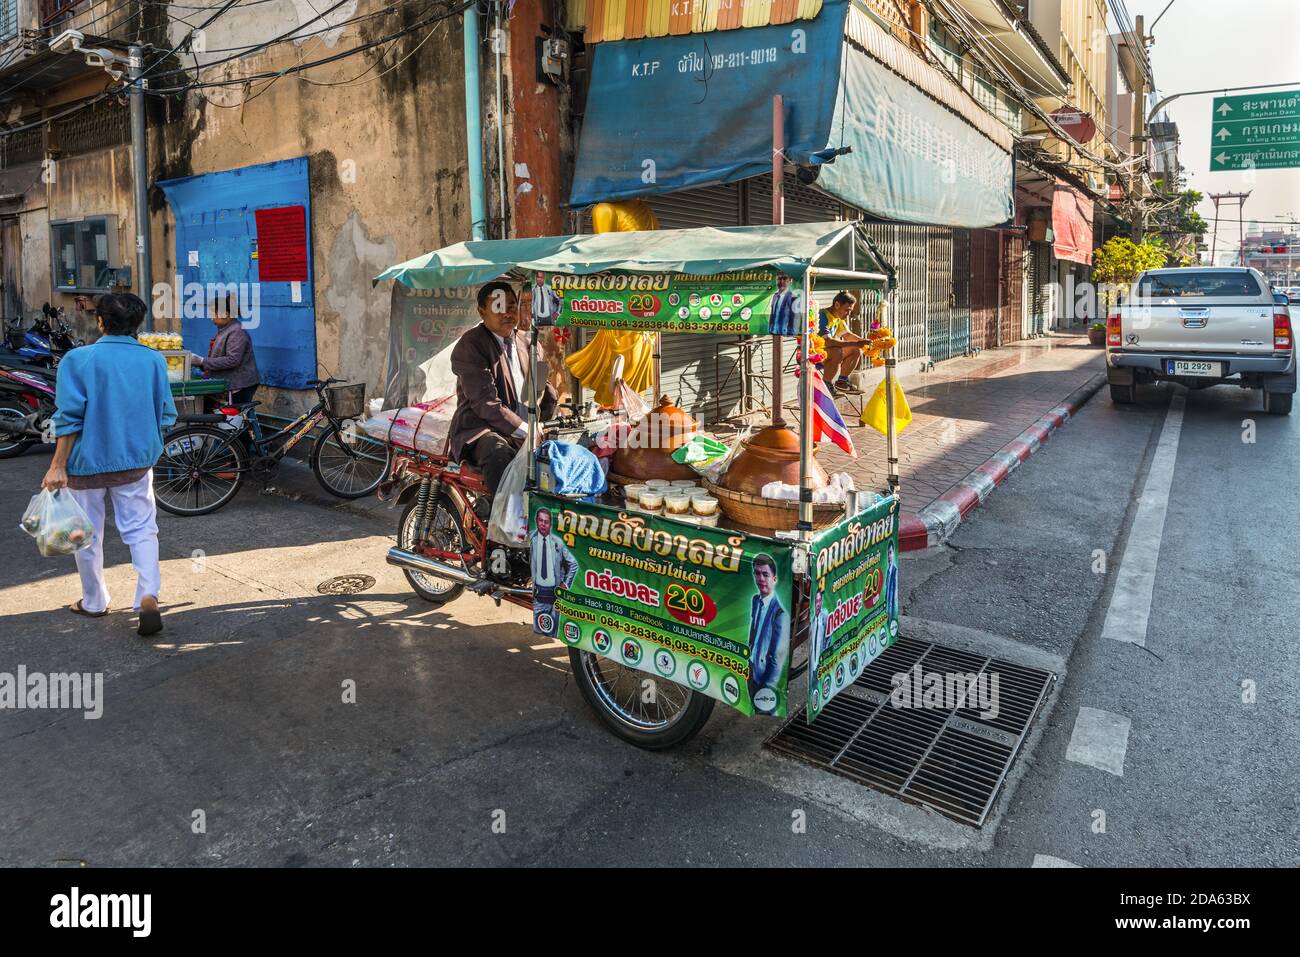 Bangkok, Thaïlande - 7 décembre 2019 : un belliciste local sur son vélo vendant de la nourriture chaude dans les rues de Bangkok, Thaïlande. Banque D'Images